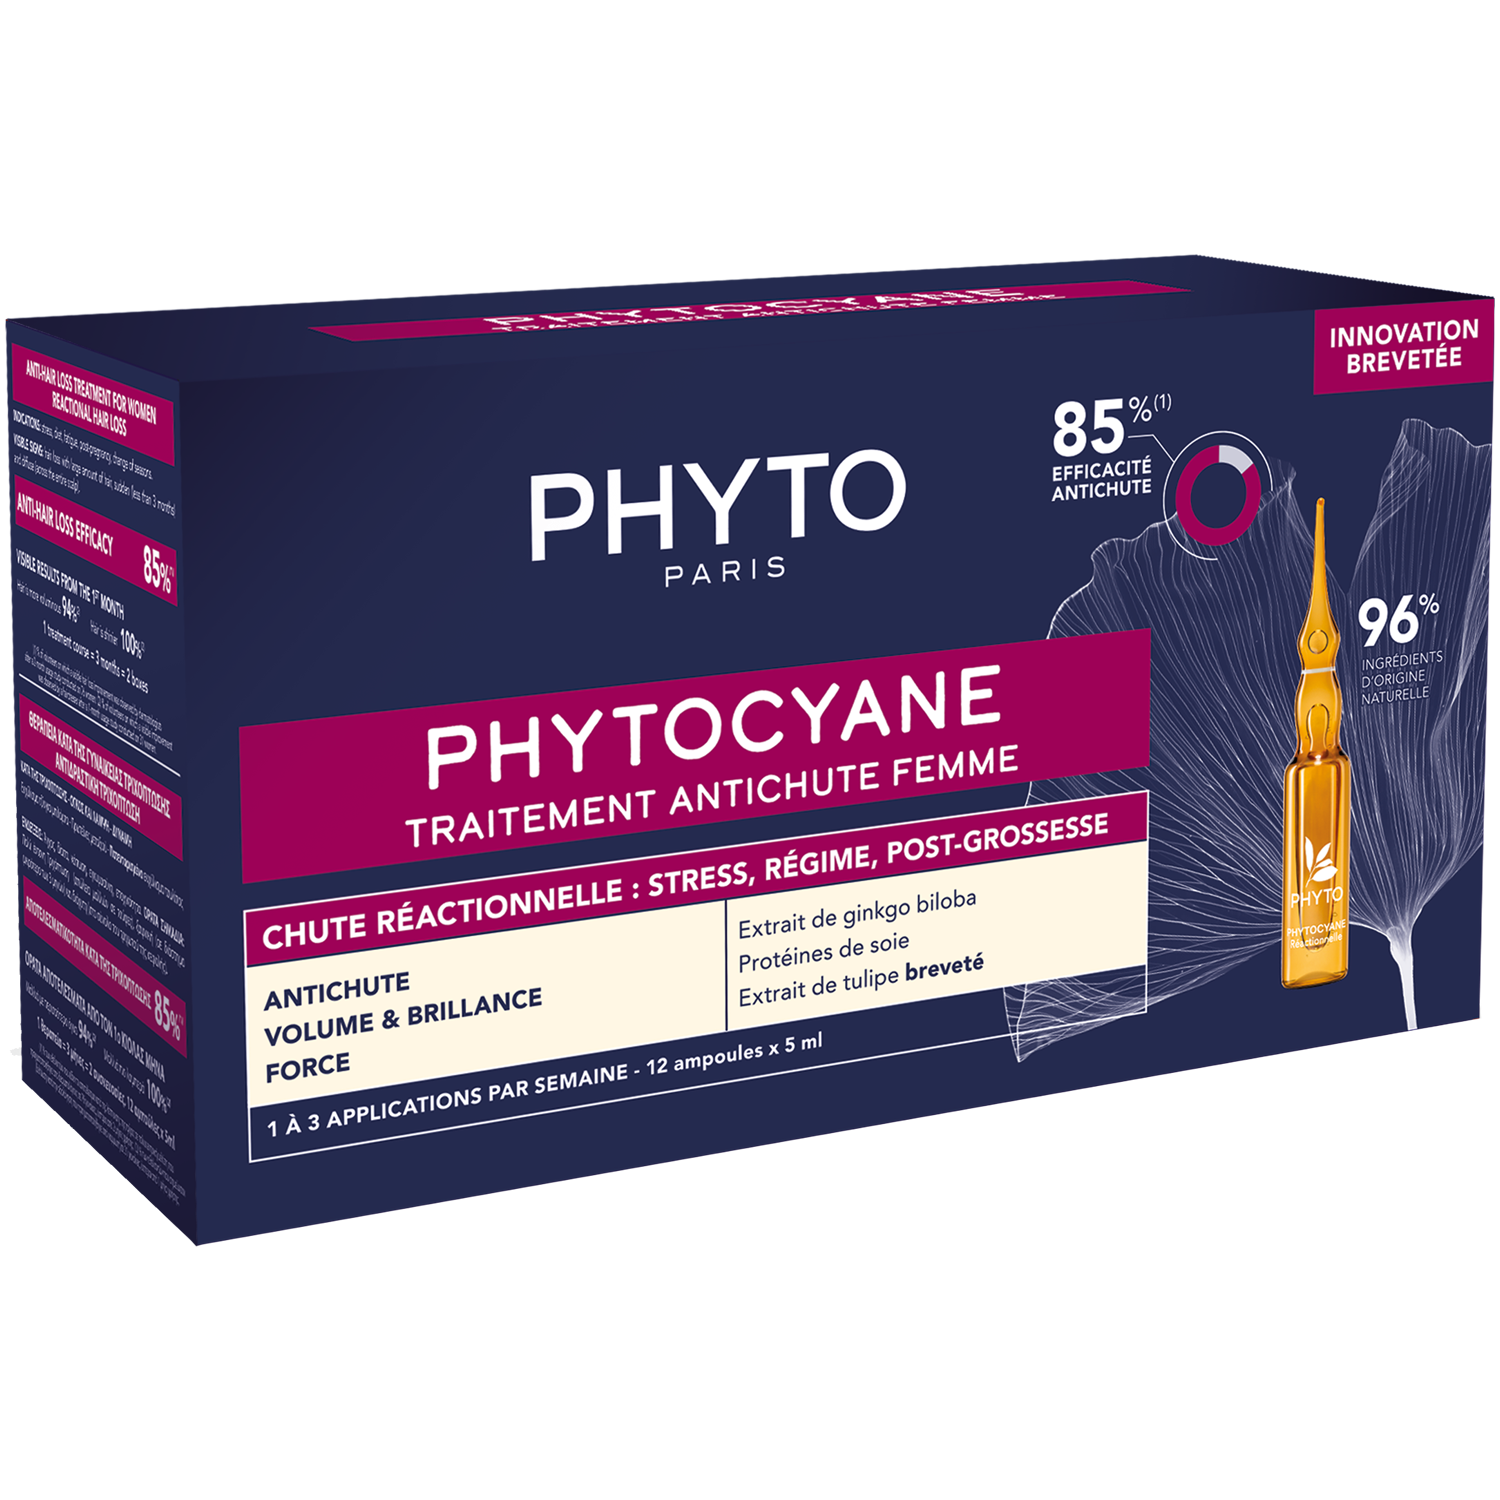 Phyto Phytocyane средство против выпадения волос для женщин, 60 мл phyto сыворотка против выпадения волос для женщин 12 флаконов х 5 мл phyto phytocyane